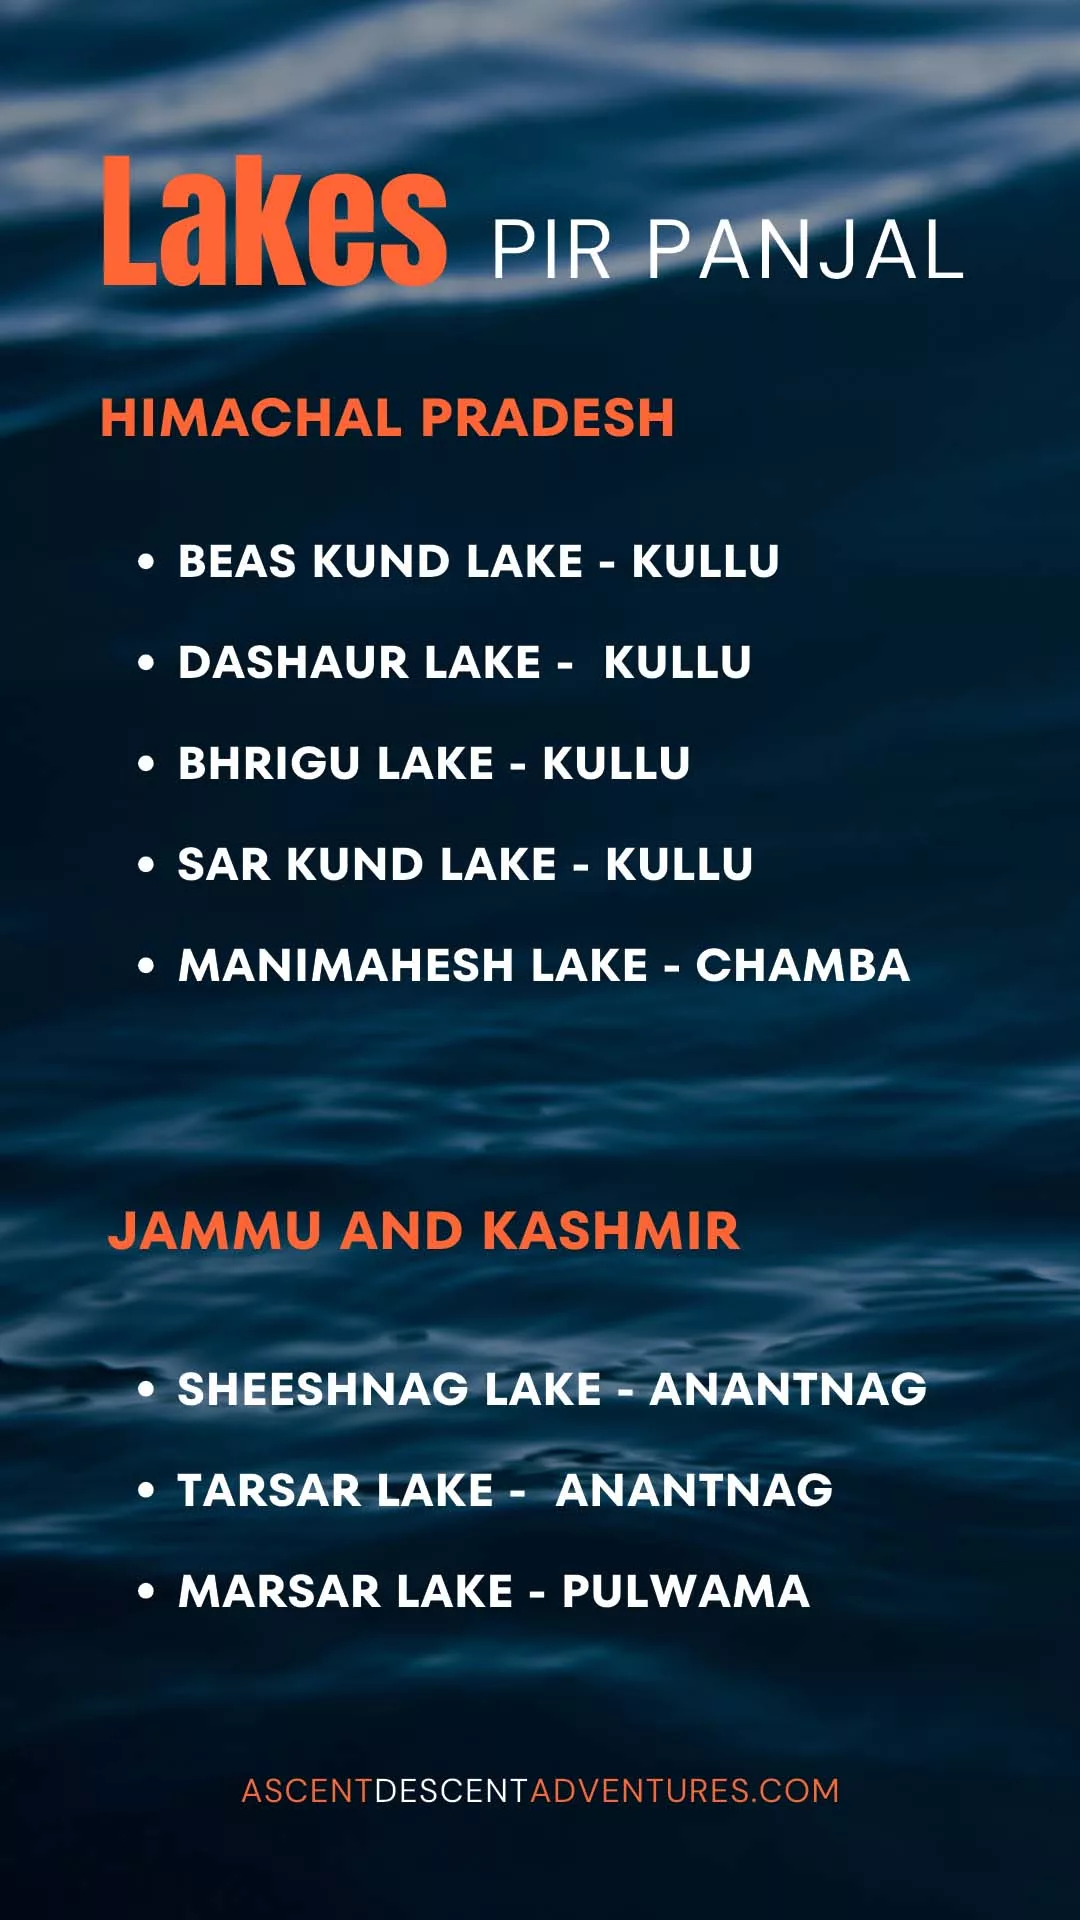 Lakes of Pir Panjal range